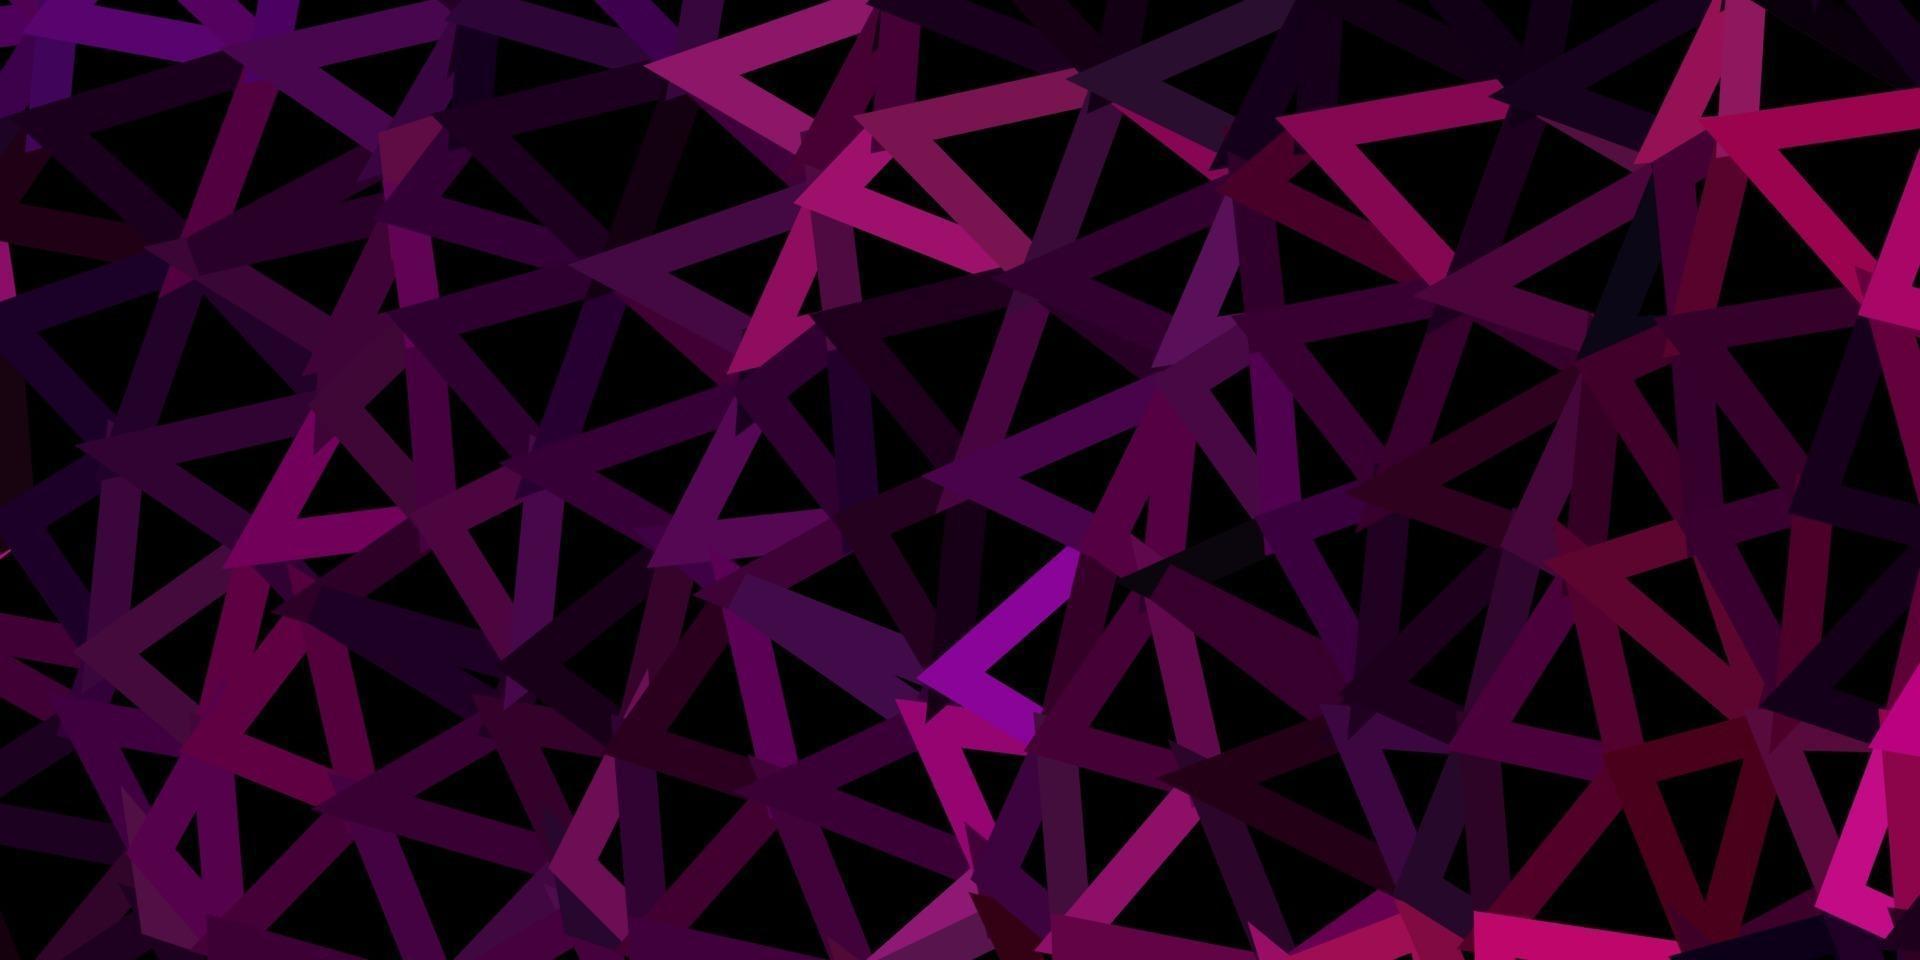 patrón poligonal de vector púrpura oscuro, rosa.